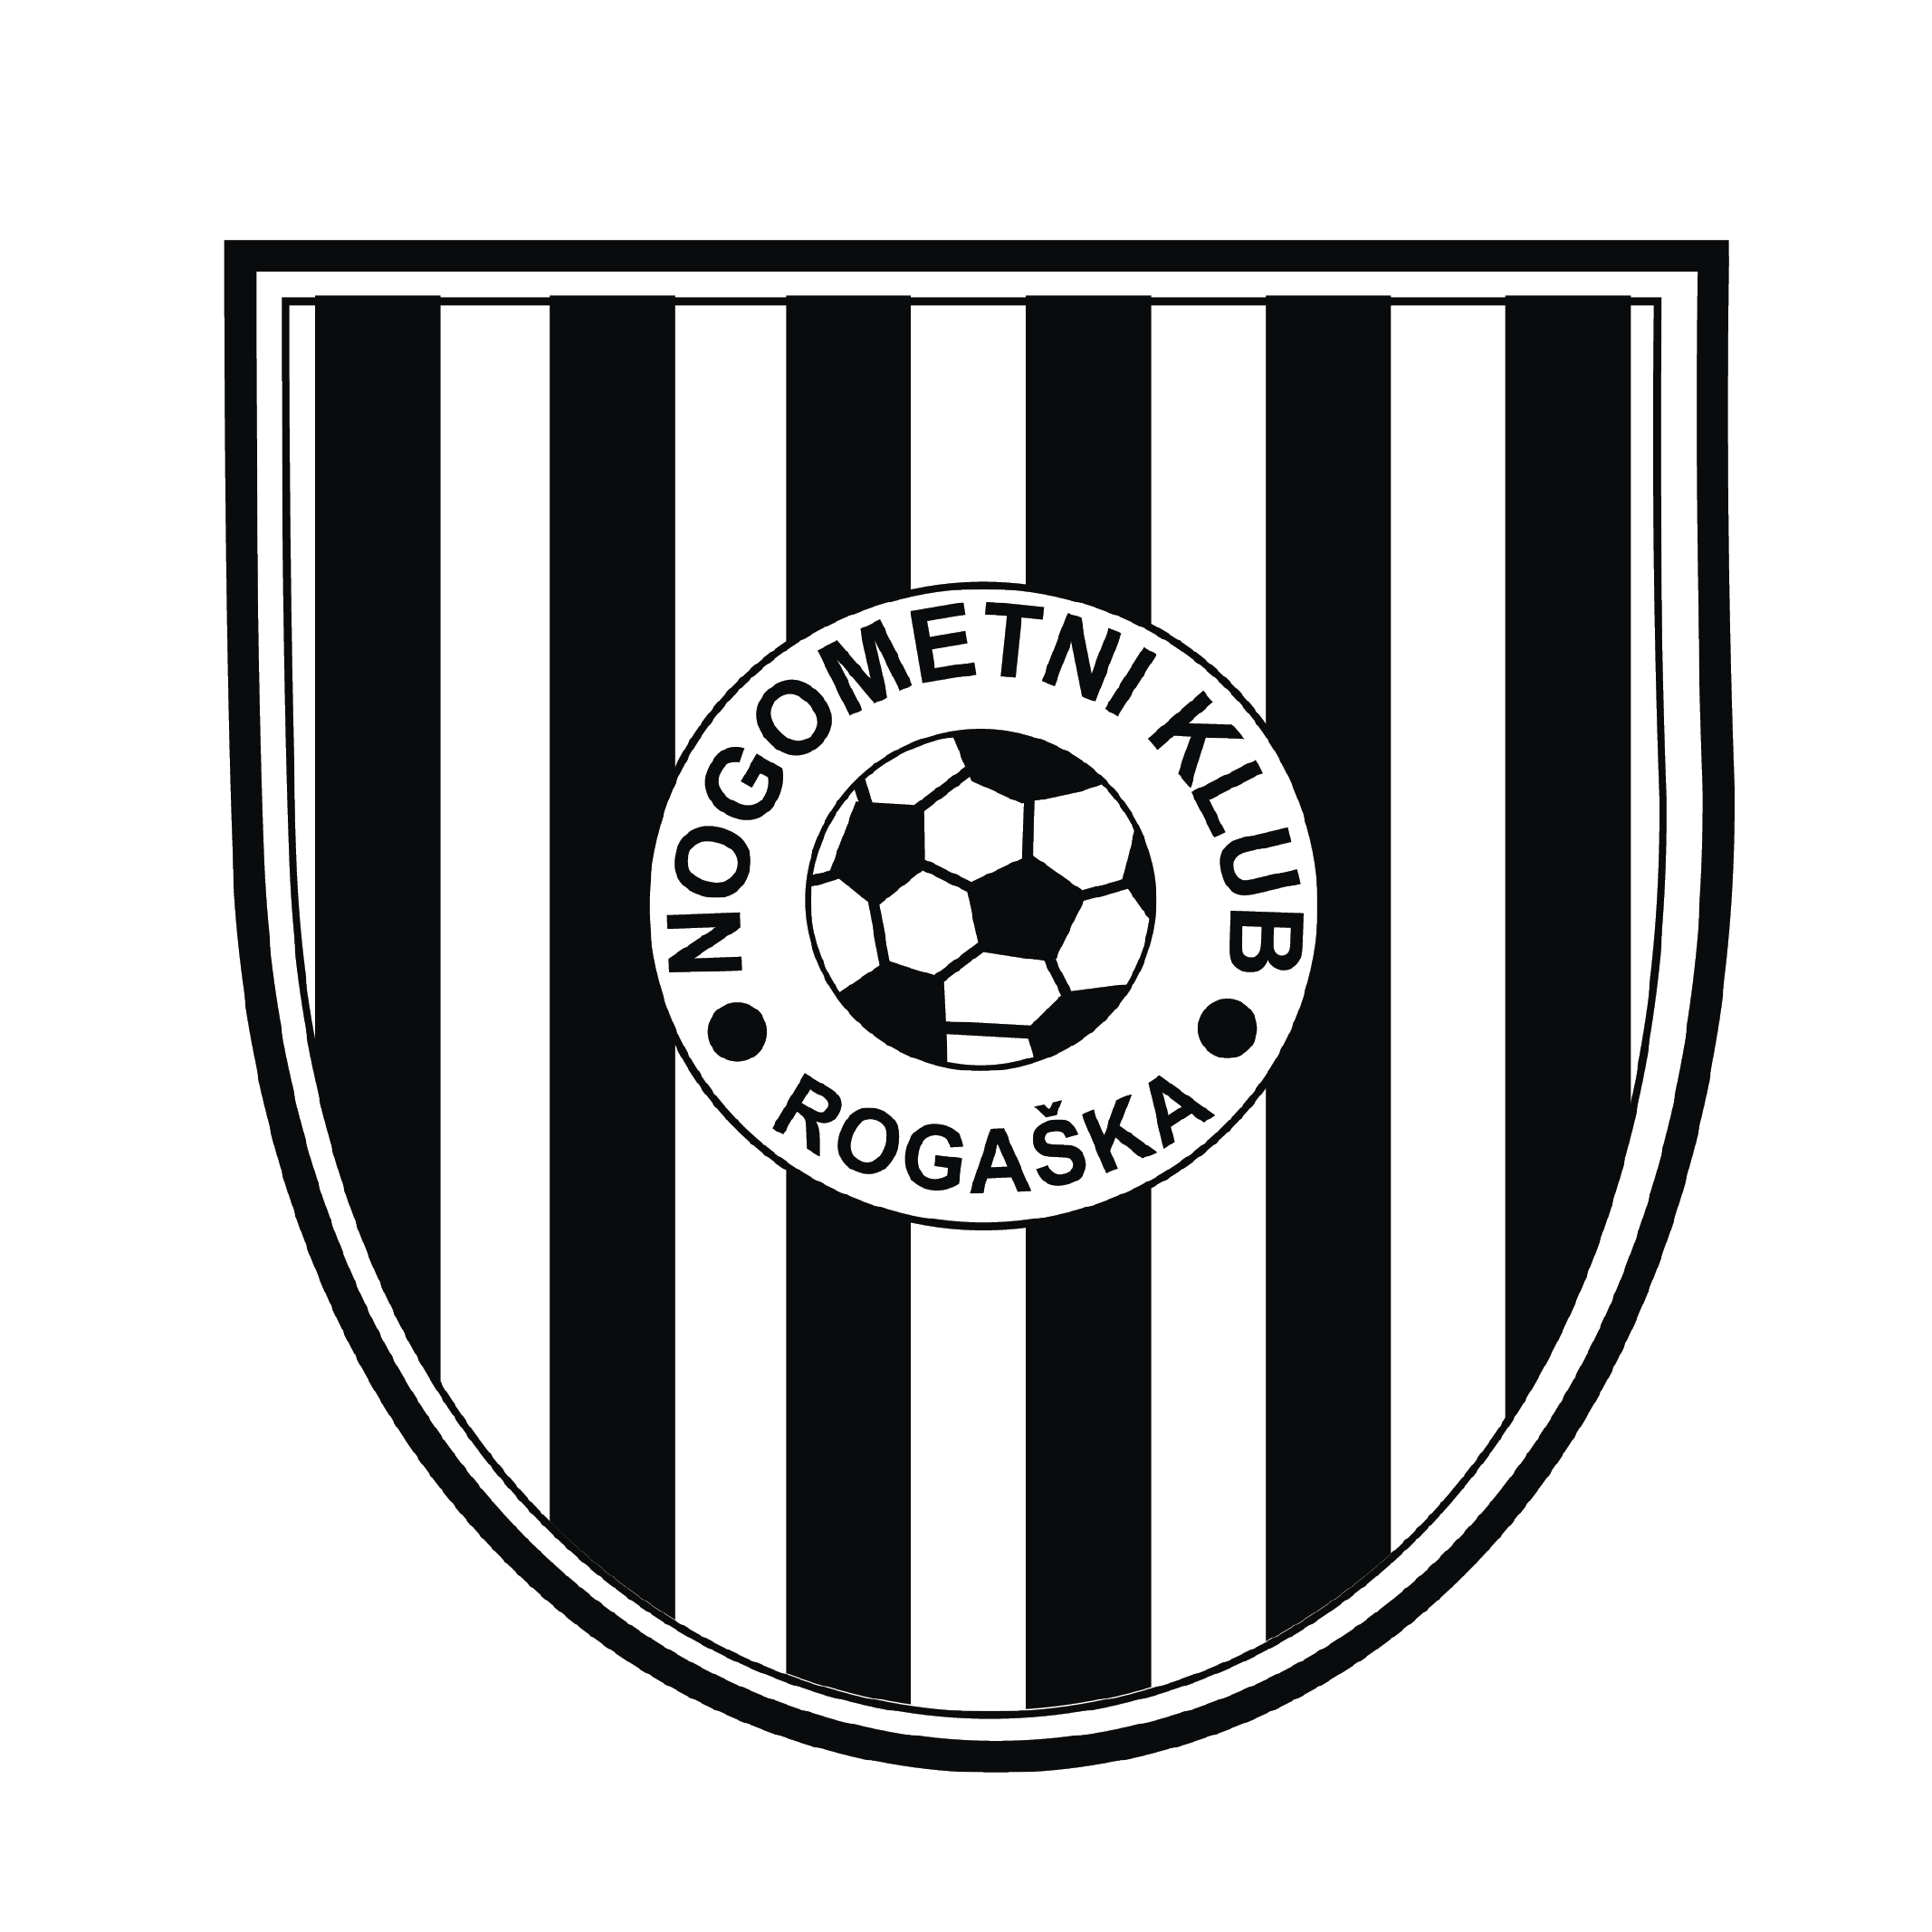 Nogometni klub Rogaška